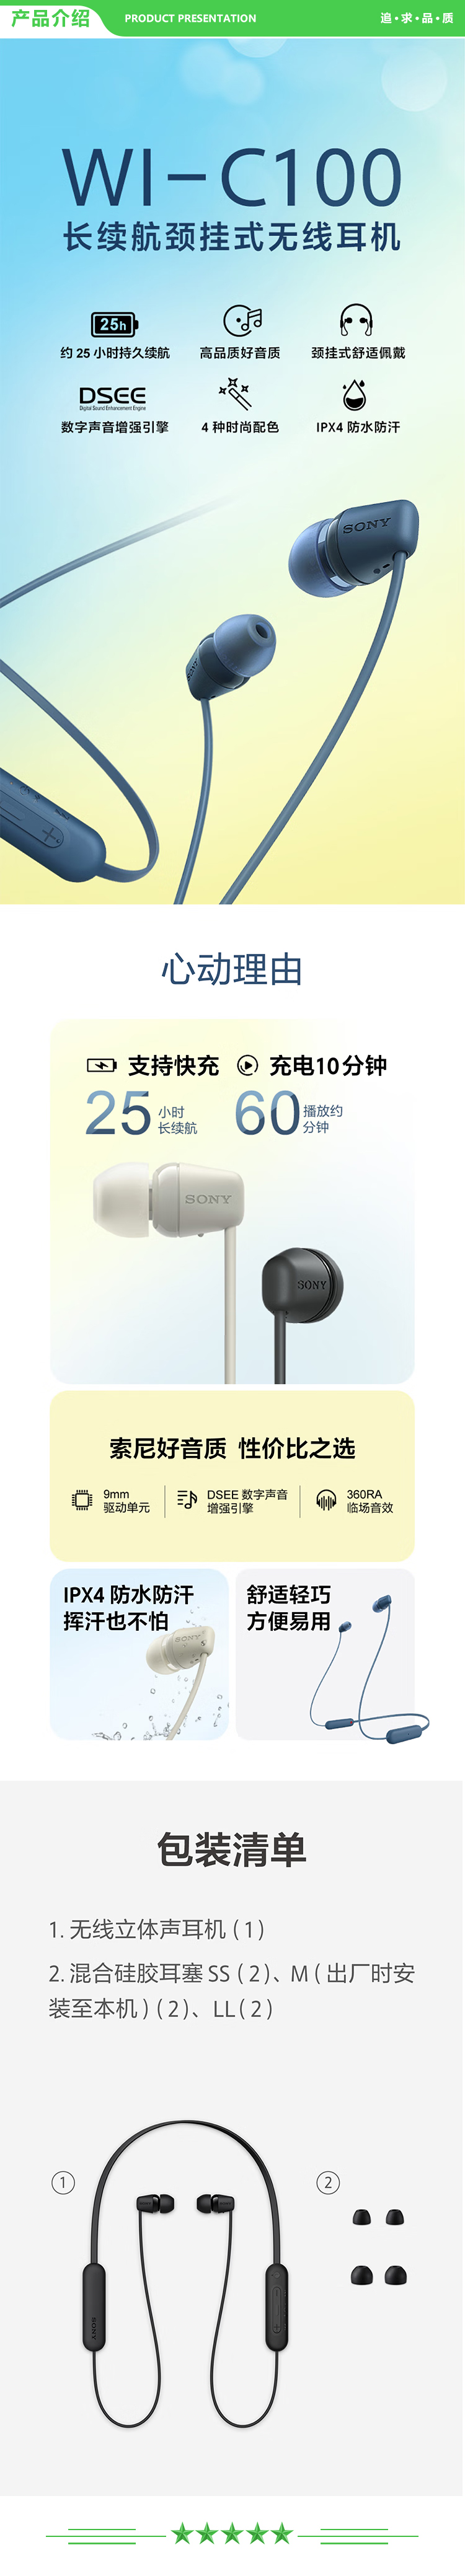 索尼 SONY WI-C100 无线立体声 颈挂式 蓝牙耳机 IPX4防水防汗 约25小时长久续航 (WI-C200升级款) 黑色 .jpg